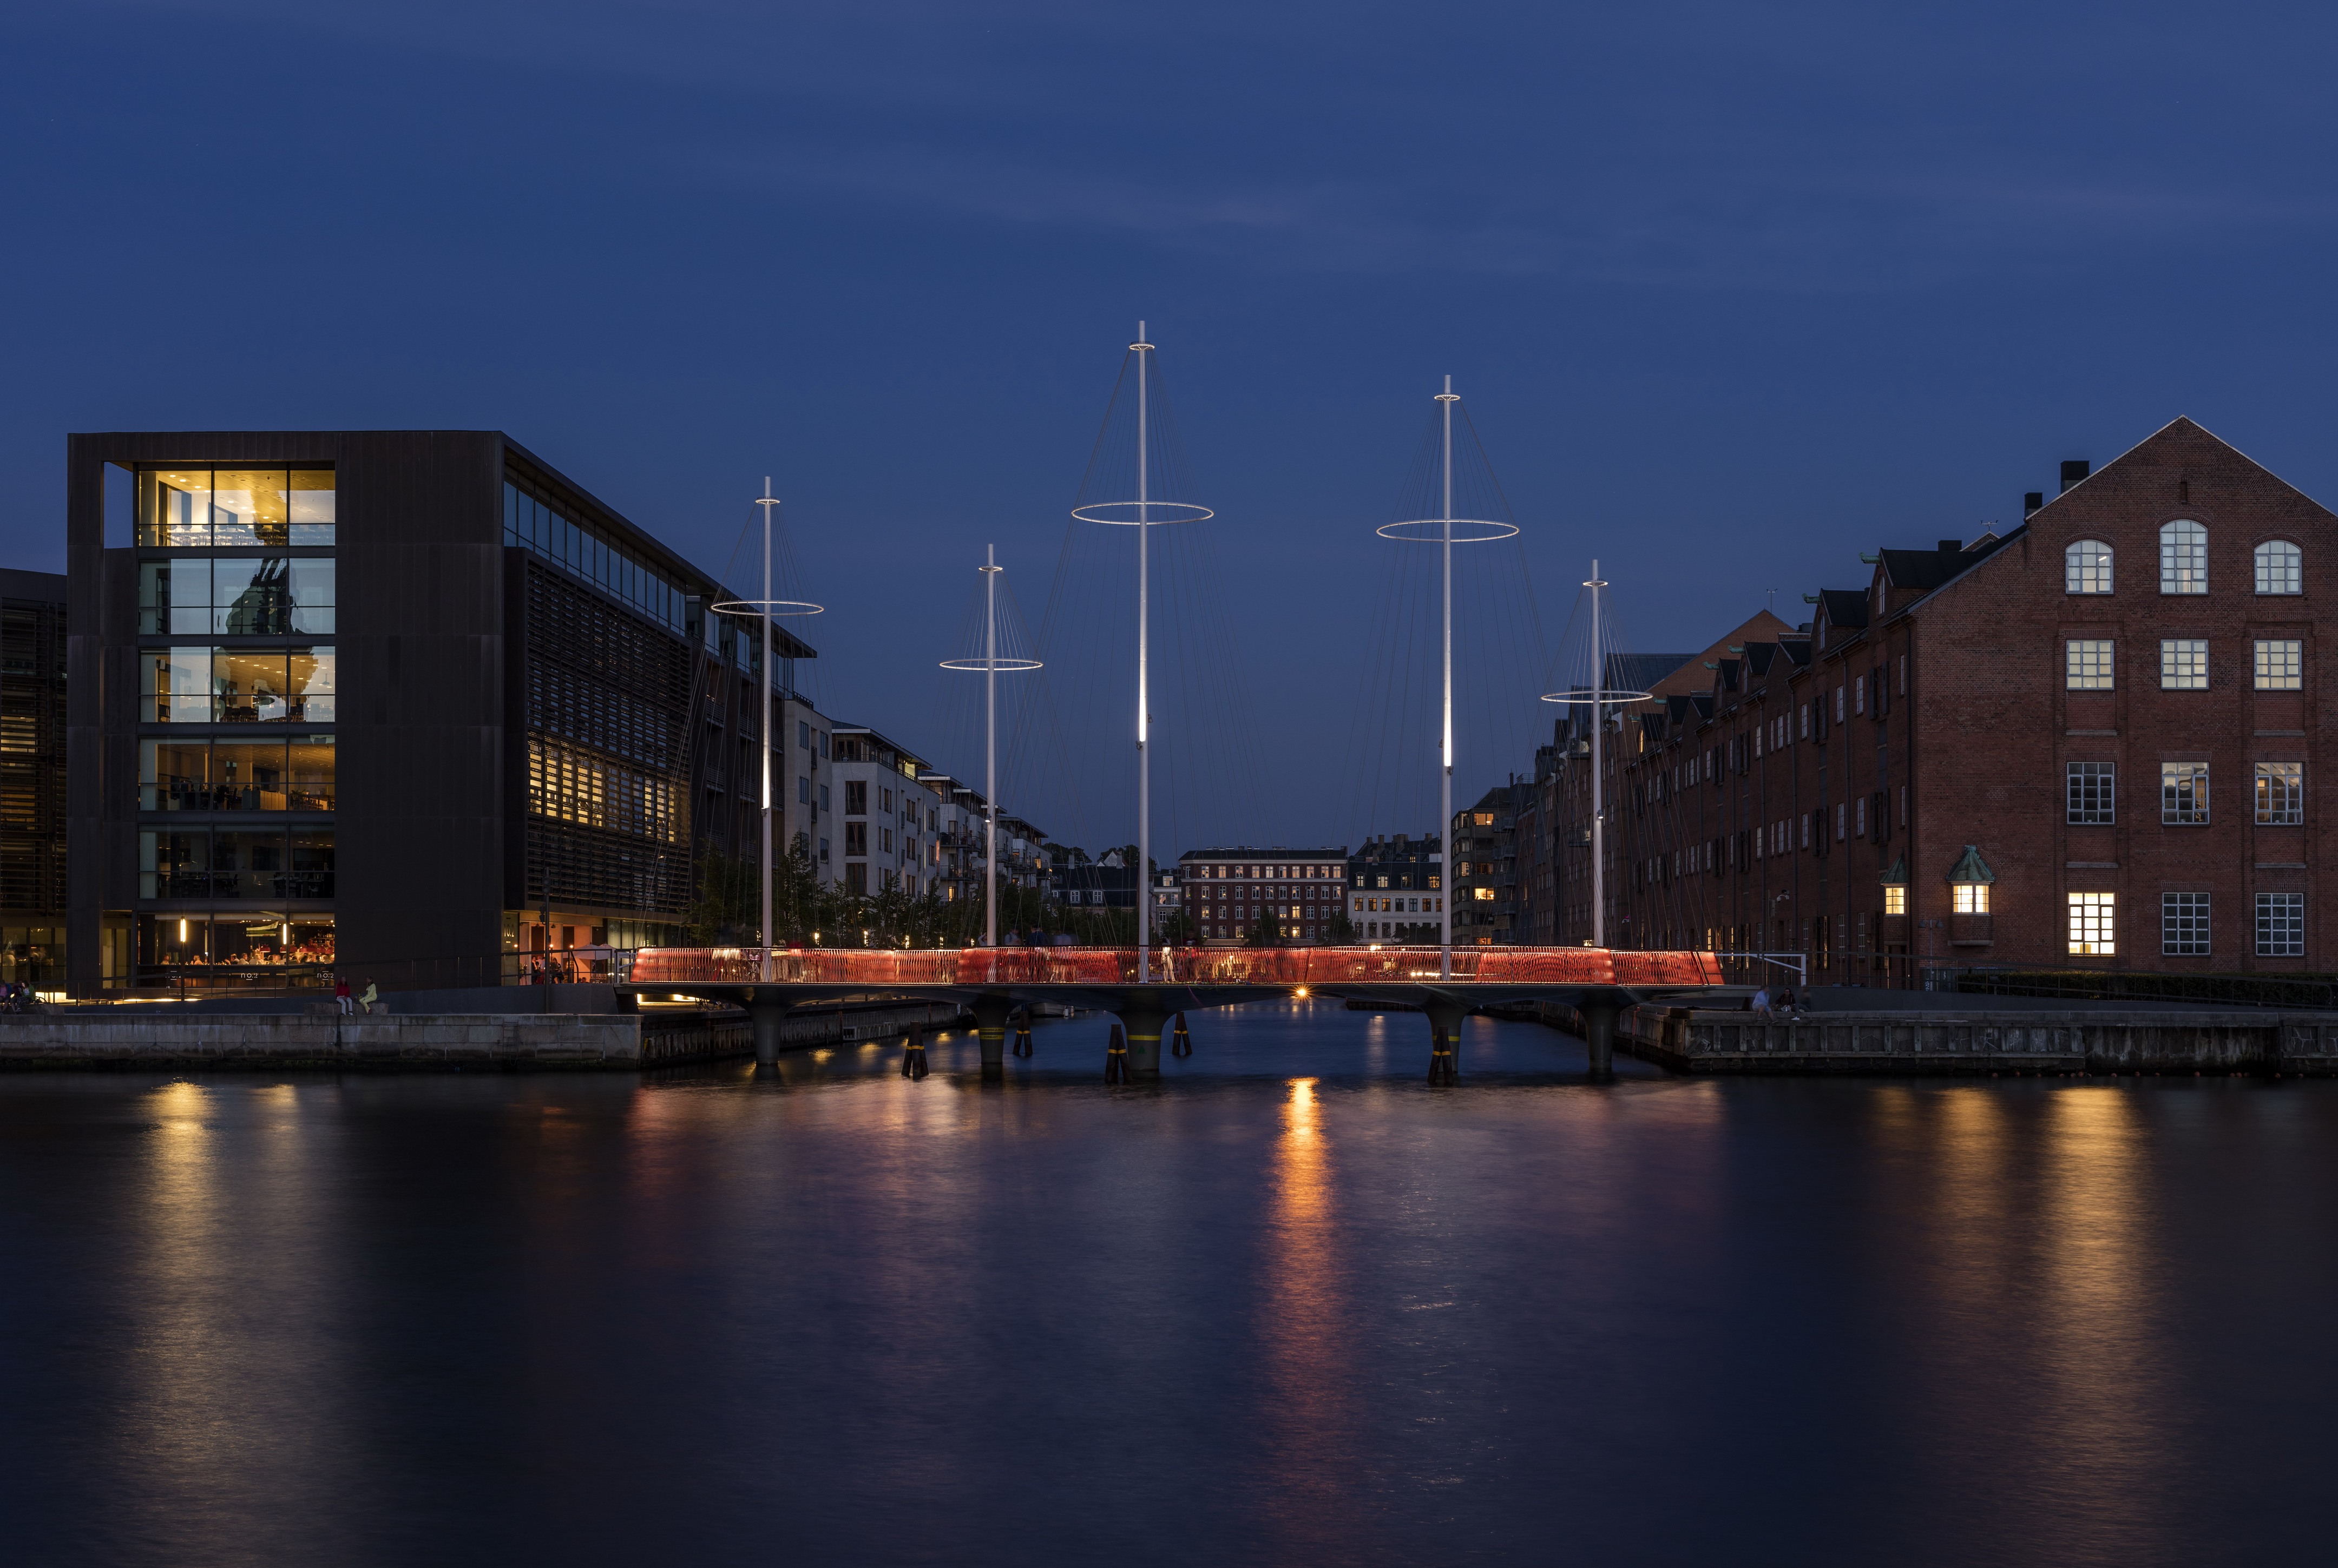 Время в копенгагене сейчас. Мост Cirkelbroen Копенгаген. Круглый мост Cirkelbroen в Копенгагене. Алафур Архитектор элиассондания фото. Studio Olafur Eliasson здание.